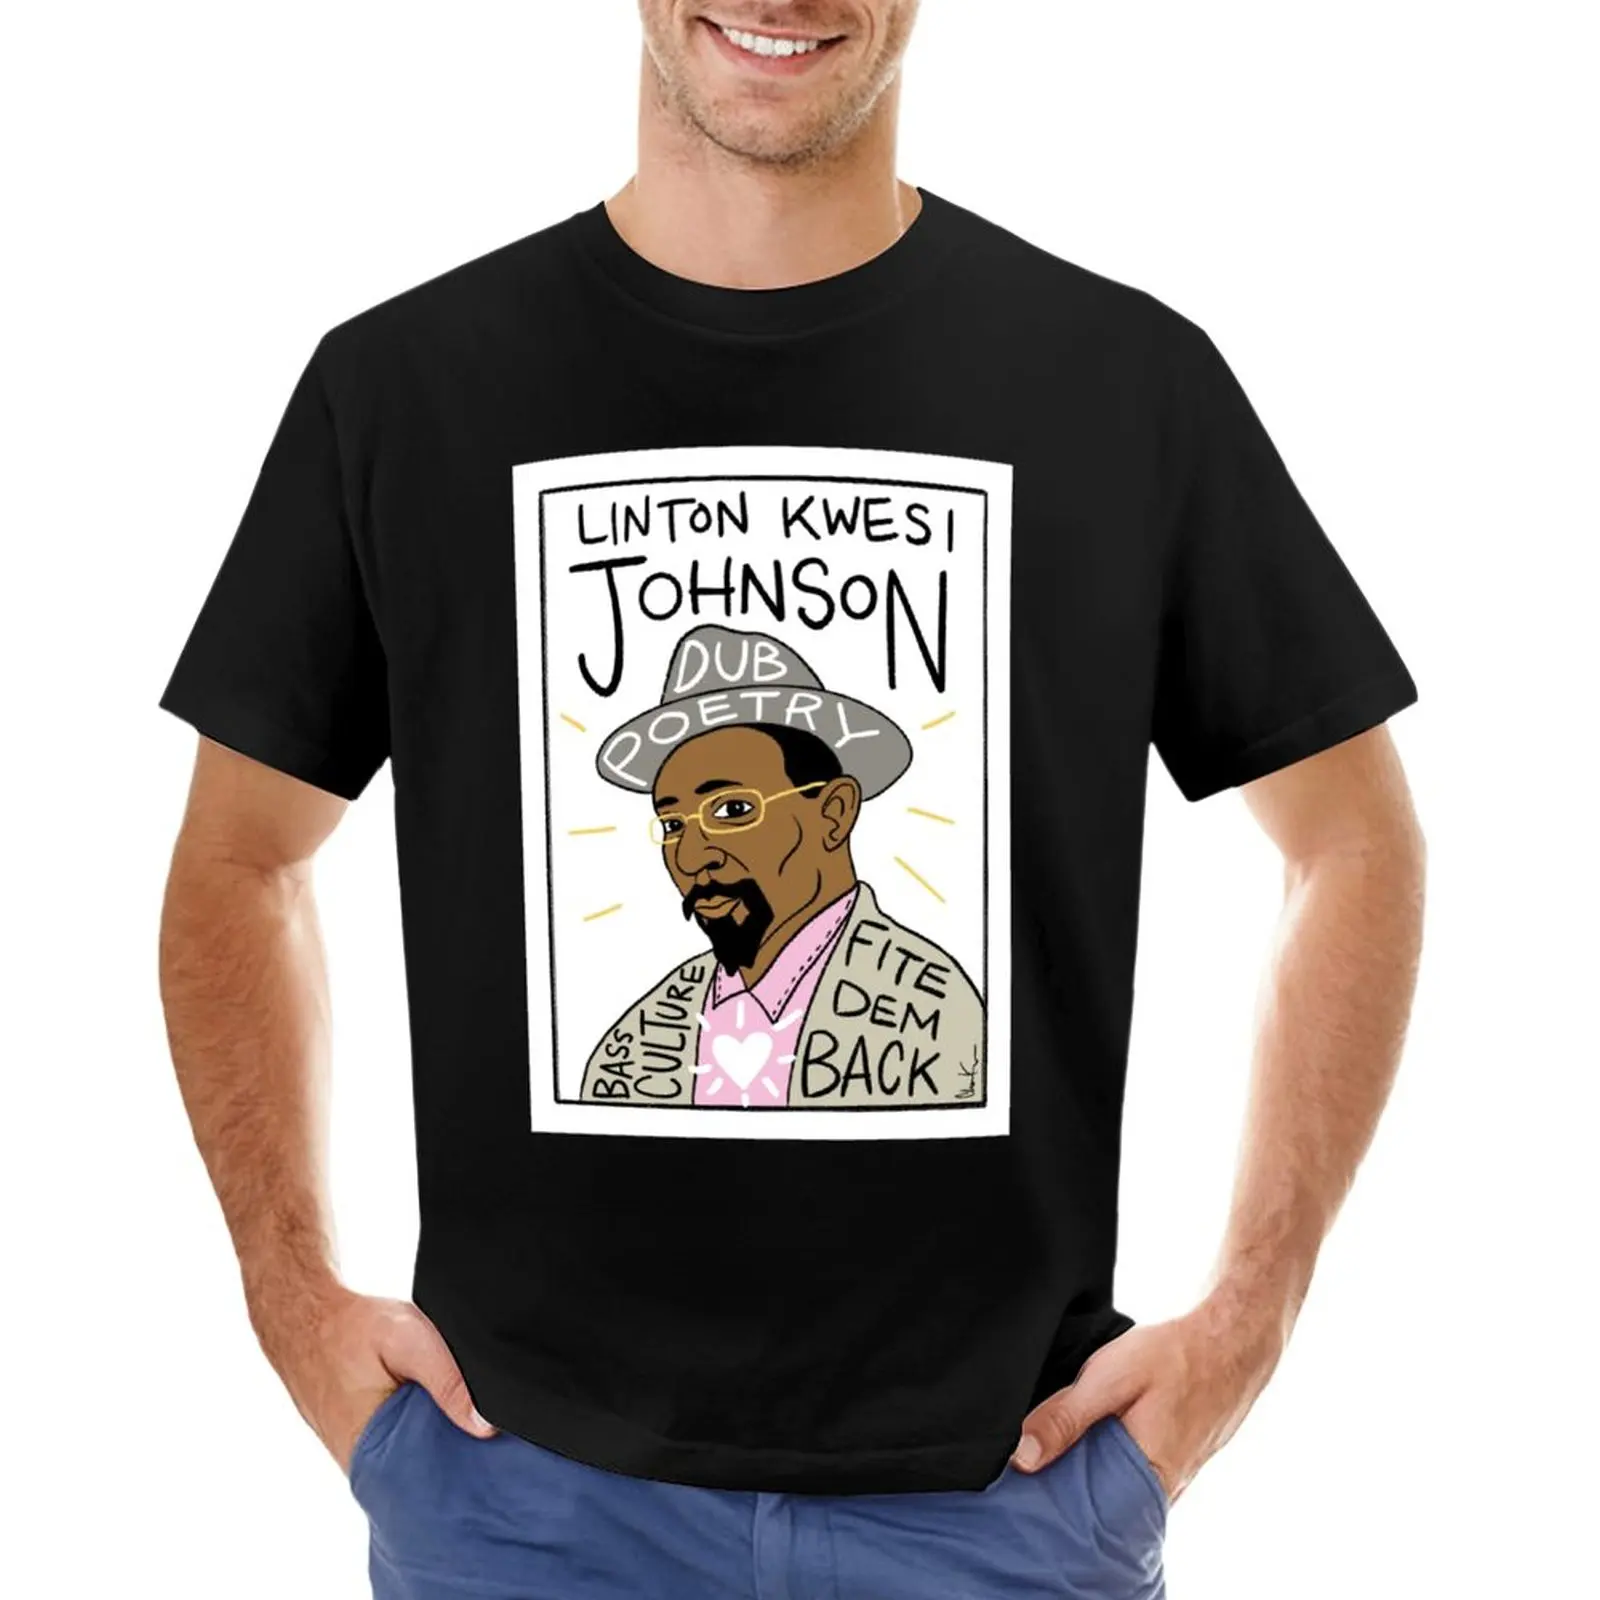 Футболка Linton Kwesi Johnson, футболки для мальчиков, футболки для любителей спорта, мужские футболки с графическим рисунком, забавные